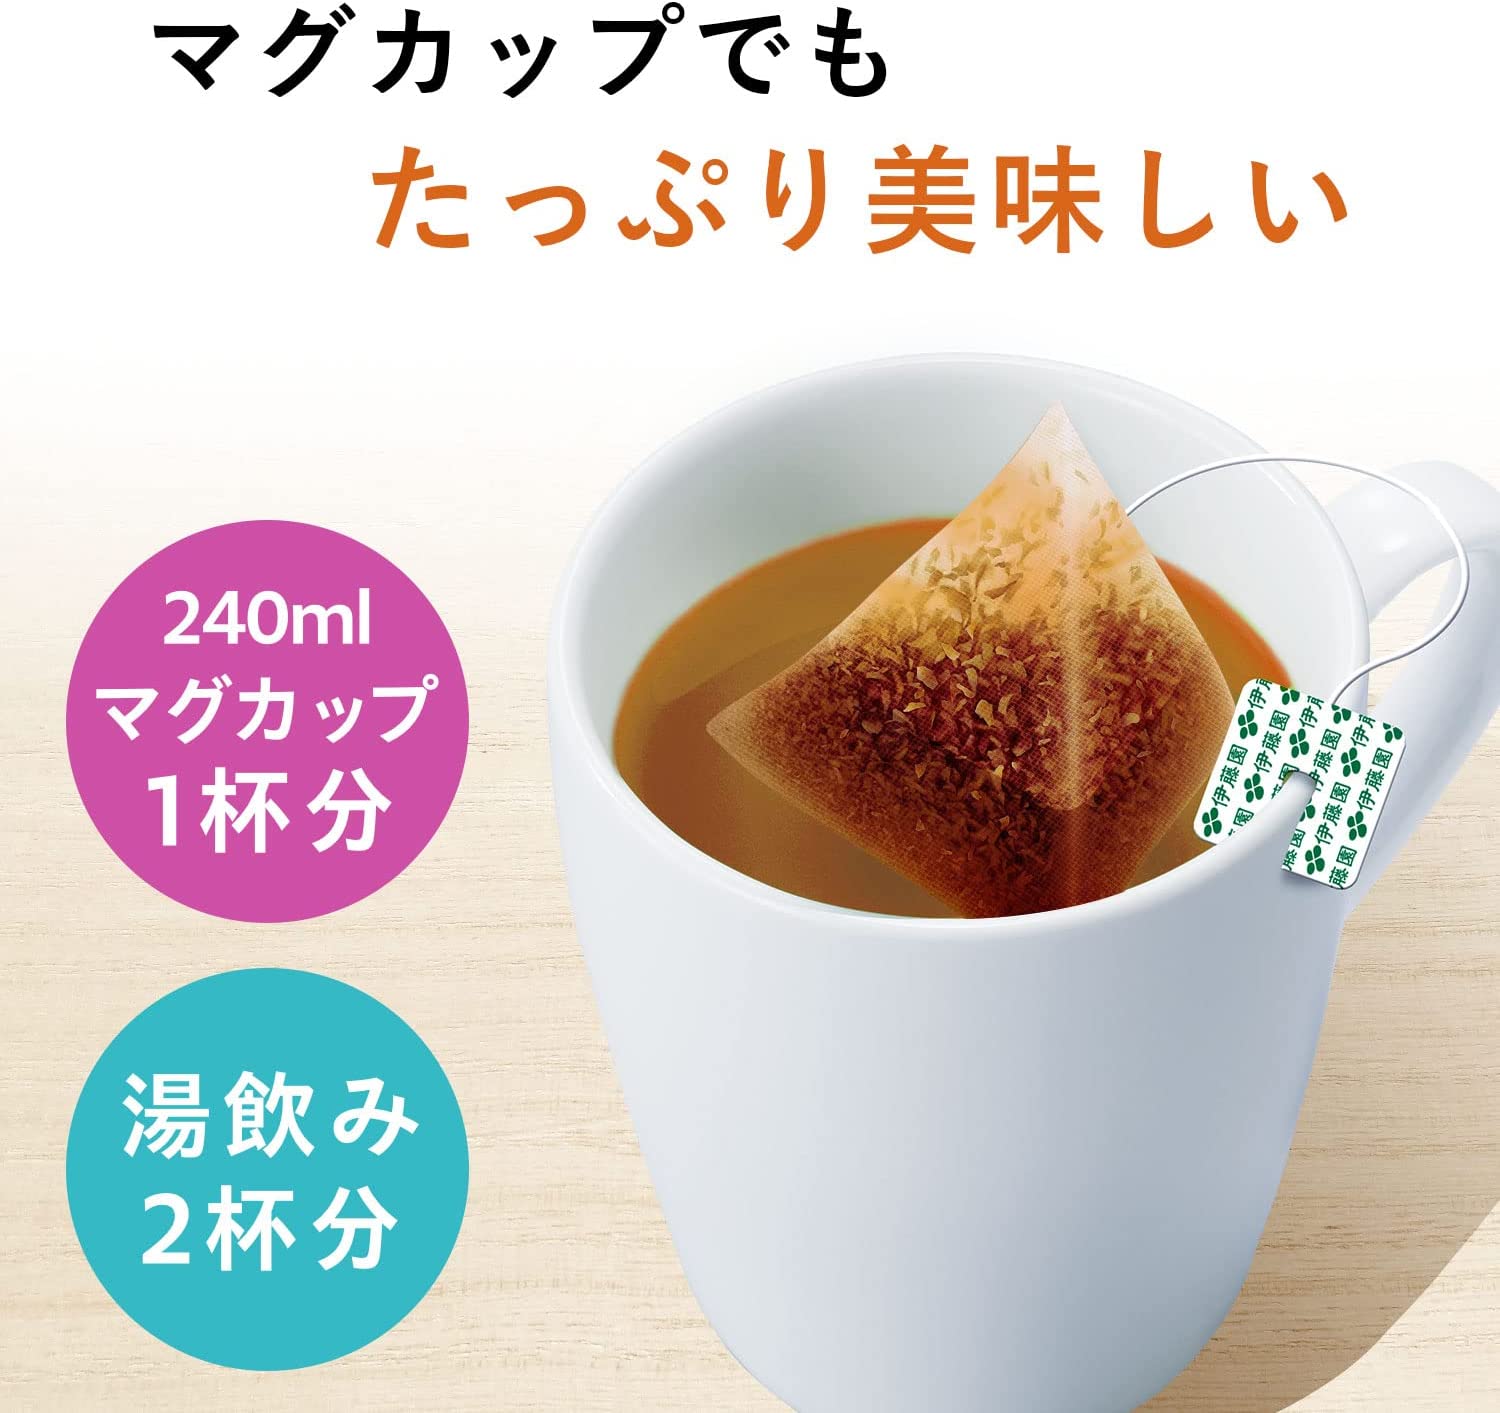 Ito En Hojicha (Roasted Green Tea) Premium Tea Bag Pack of 50 - NihonMura